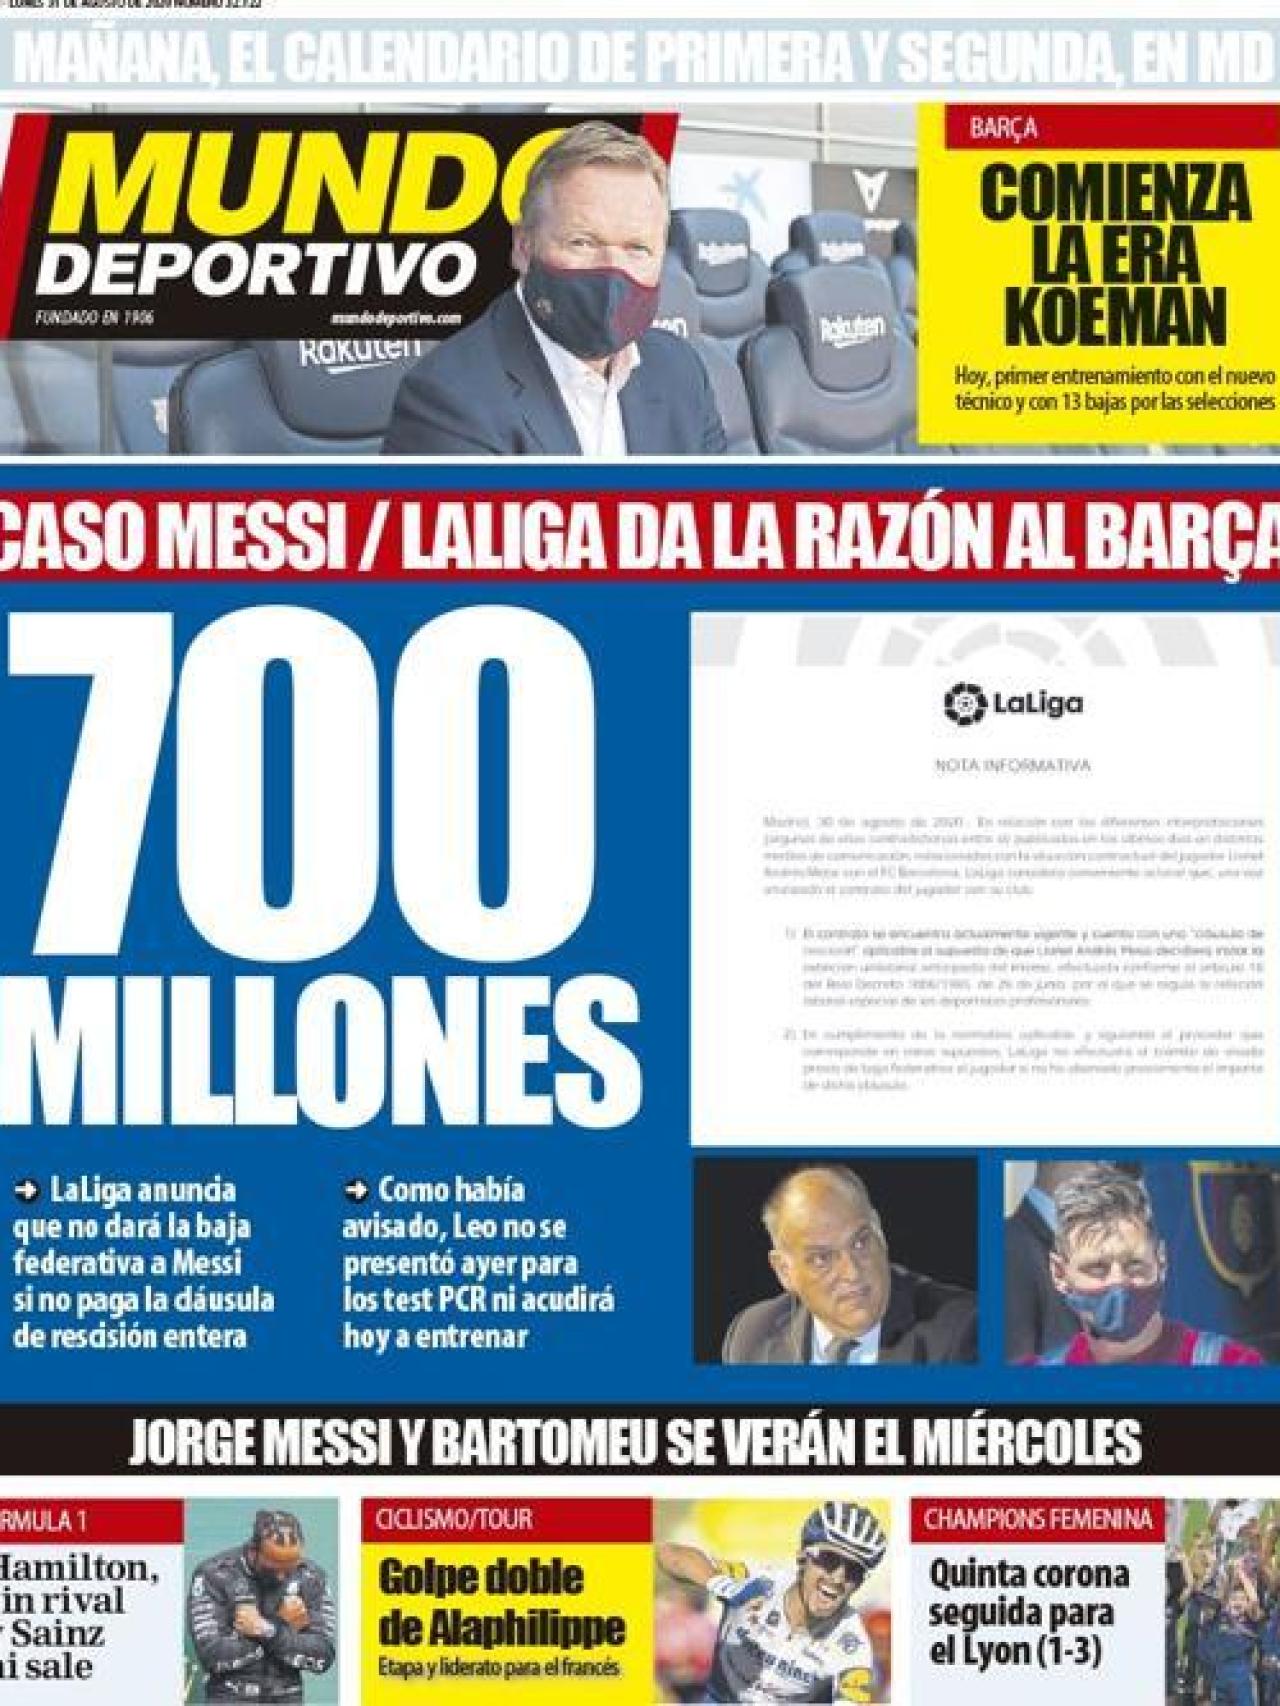 La portada del diario Mundo Deportivo (31/08/2020)